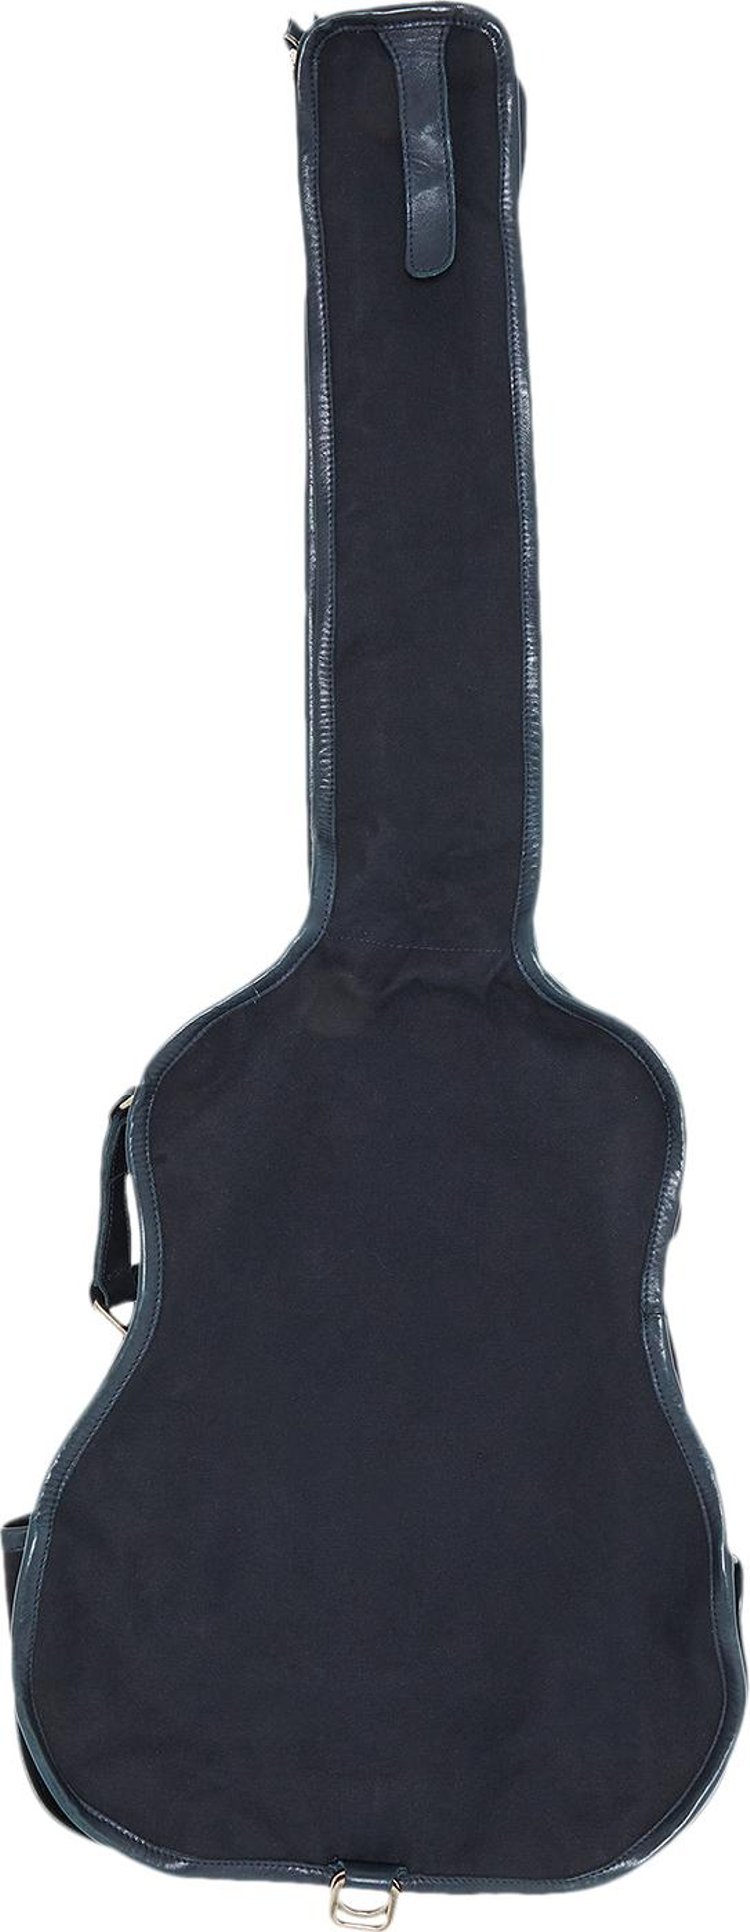 Buy Vintage Maison Margiela Guitar Case Shoulder Bag 'Blue' - 0063 ...